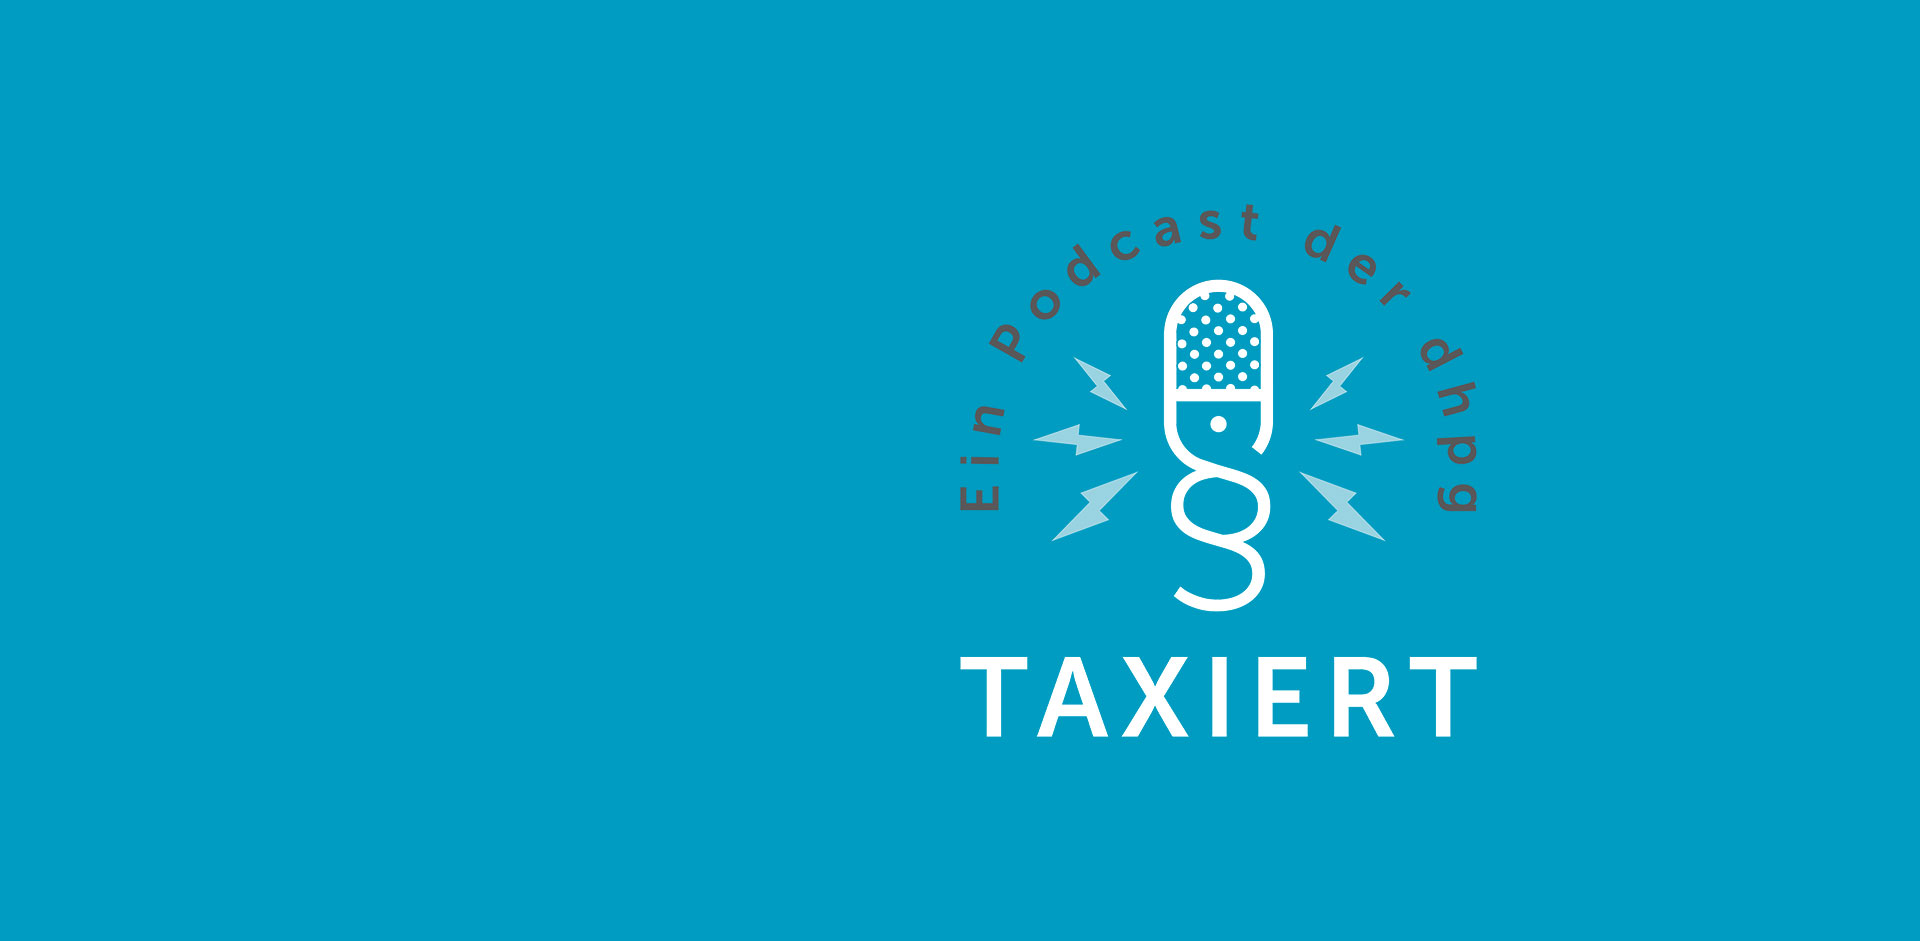 Taxiert – der dhpg Podcast für Steuern und Recht